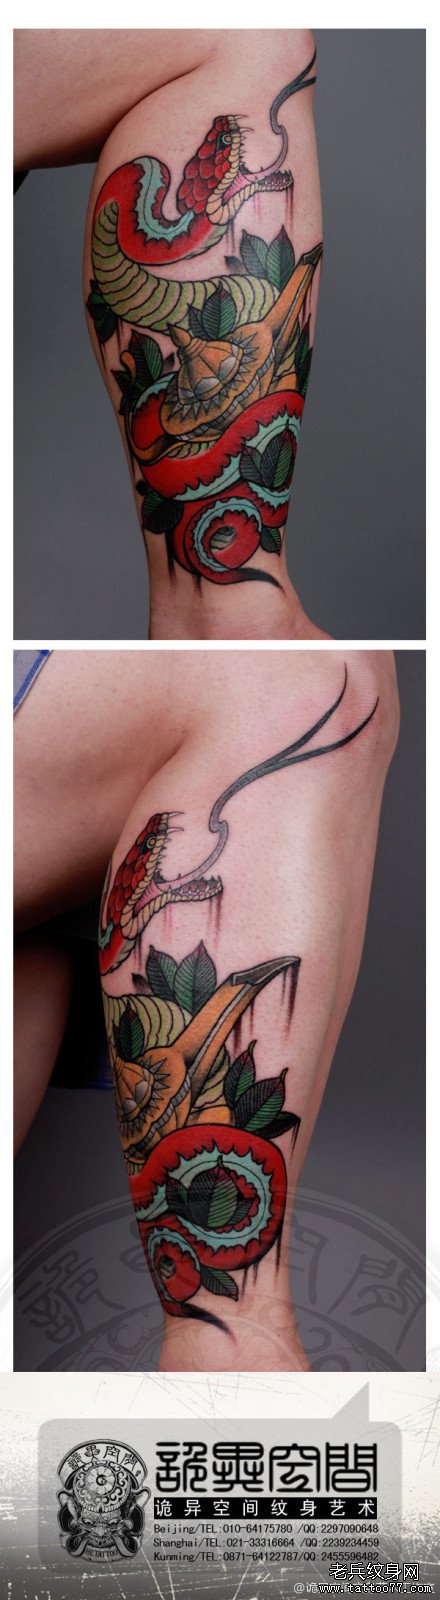 腿部潮流简单的蛇纹身图案